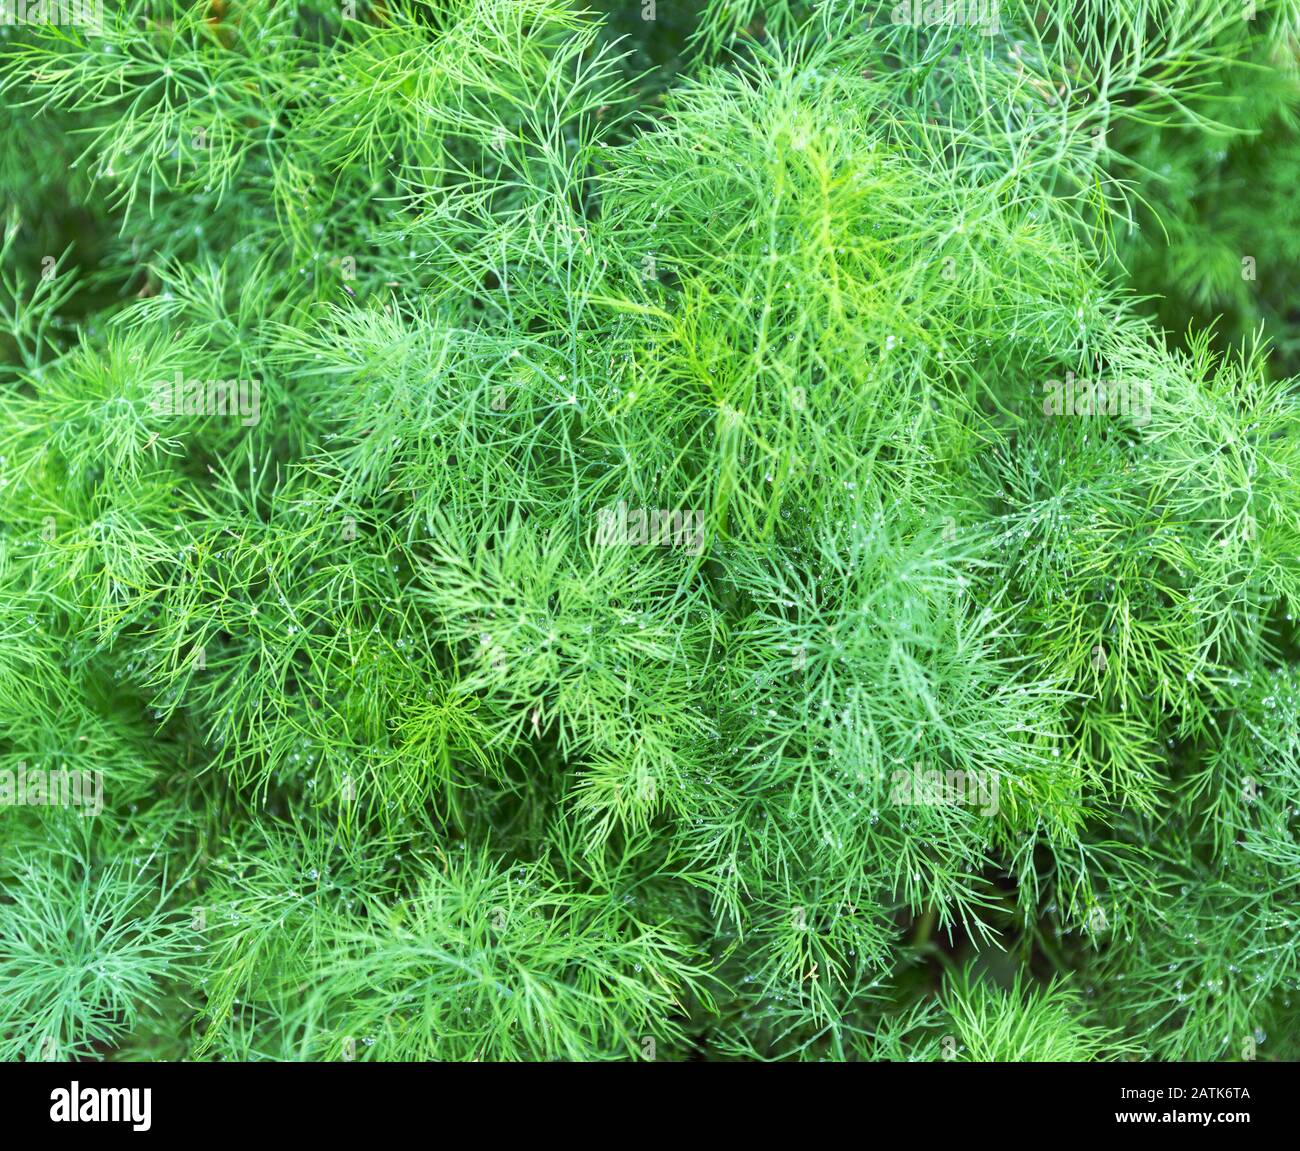 Dillanlage im Garten. Grüner Hintergrund mit Dill. Fenchel verlässt. Grüner Blatthintergrund. Stockfoto